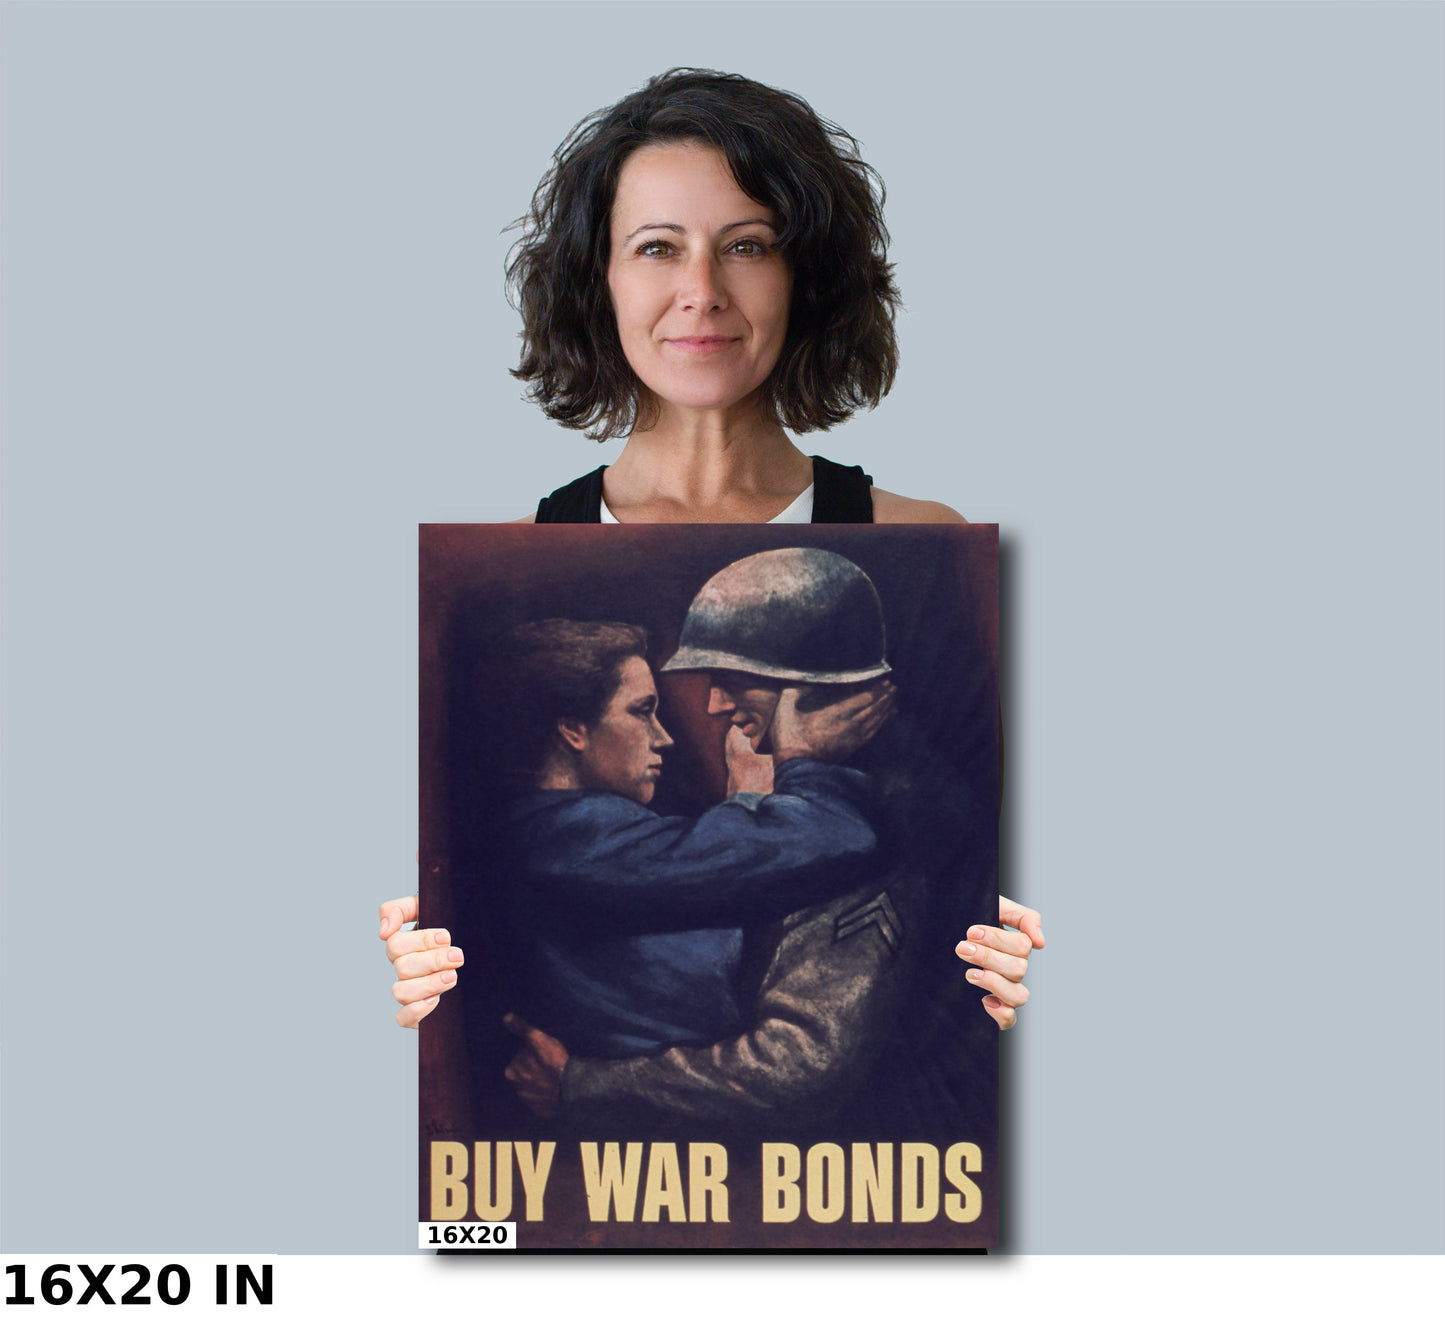 Buy War Bonds